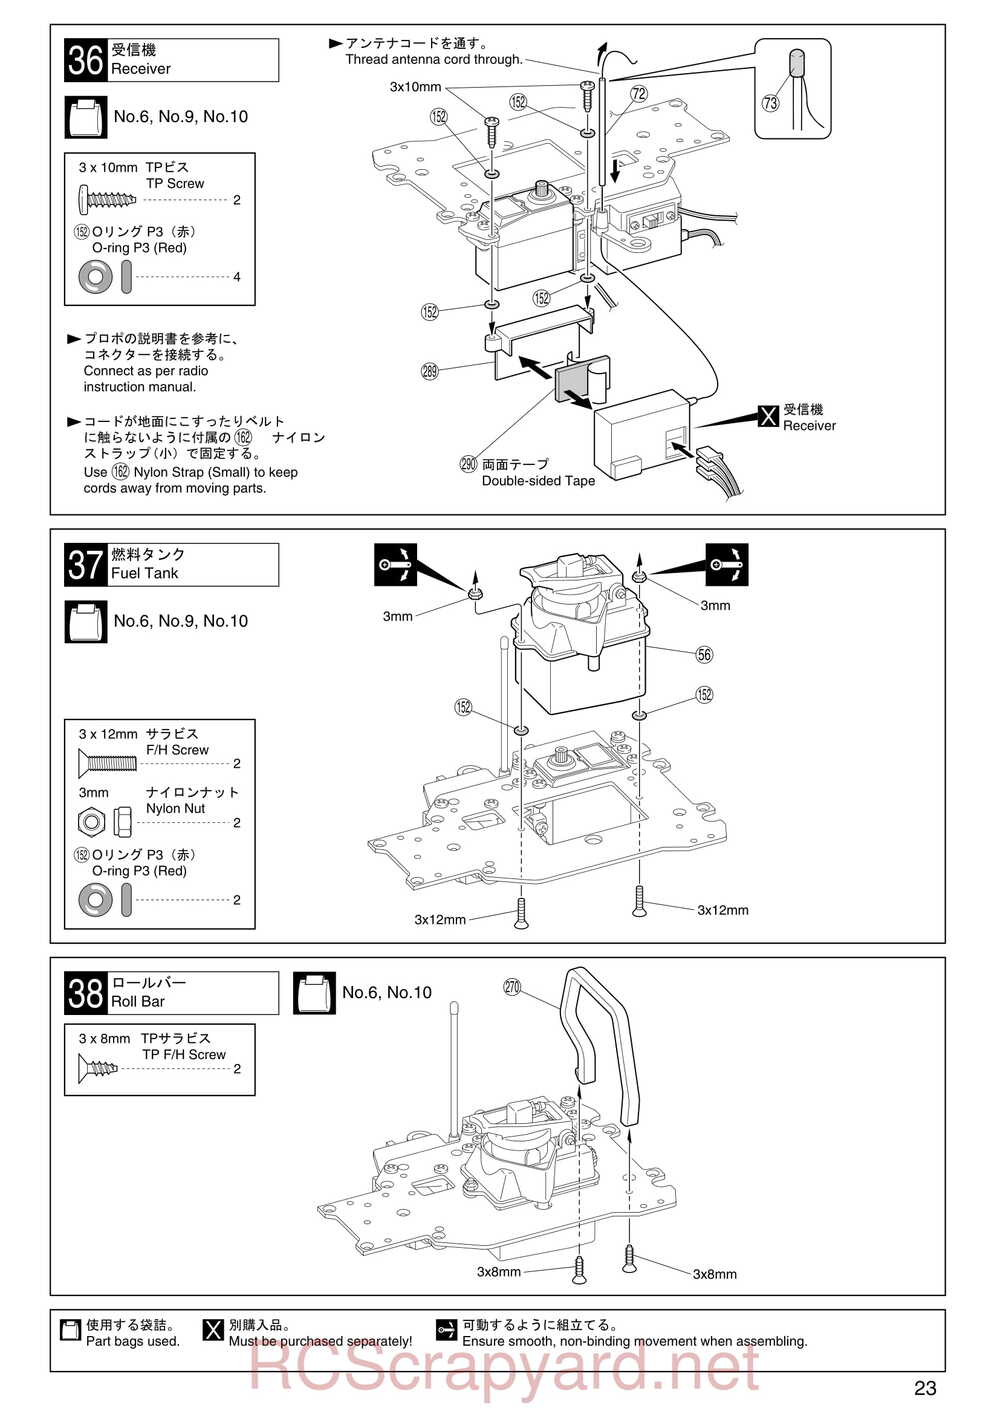 Kyosho - 31255 - V-One RR Evolution - Manual - Page 23